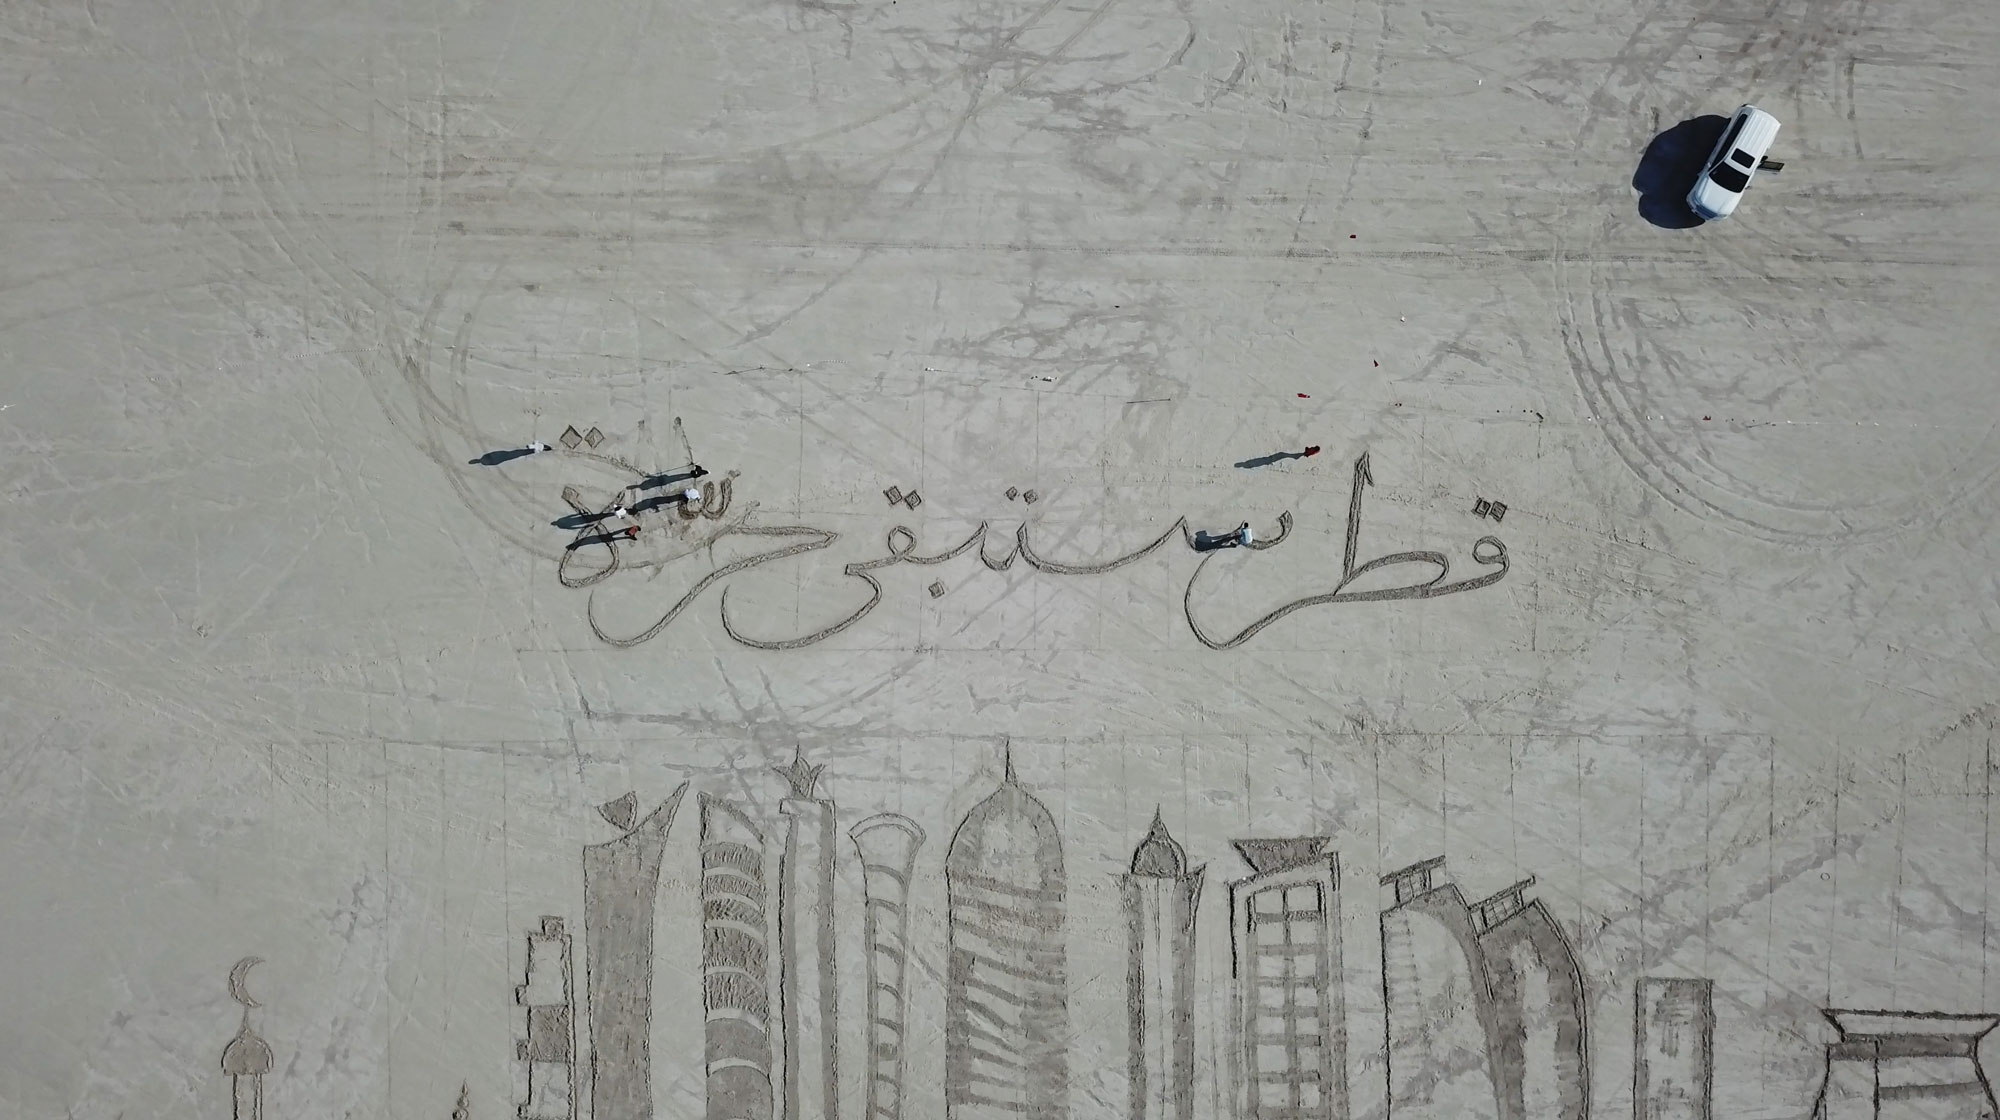 Calligraffiti art showcased on the beach shore in Qatar